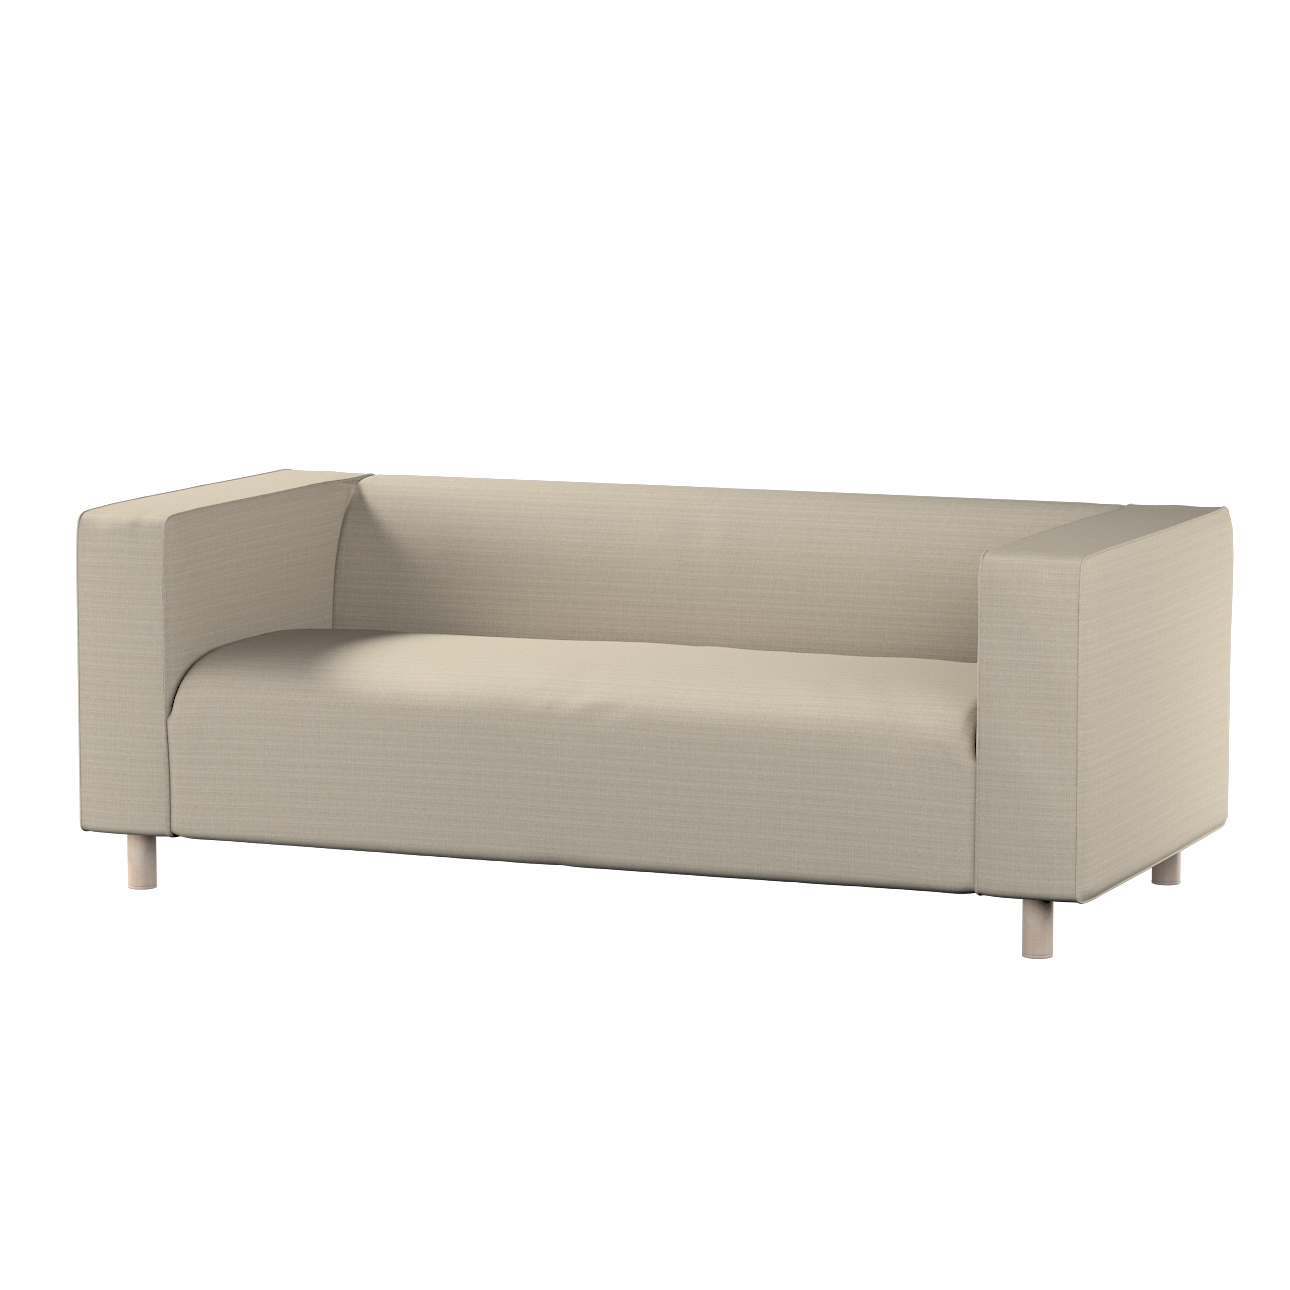 Bezug für Klippan 2-Sitzer Sofa, beige, Sofahusse, Klippan 2-Sitzer, Living günstig online kaufen